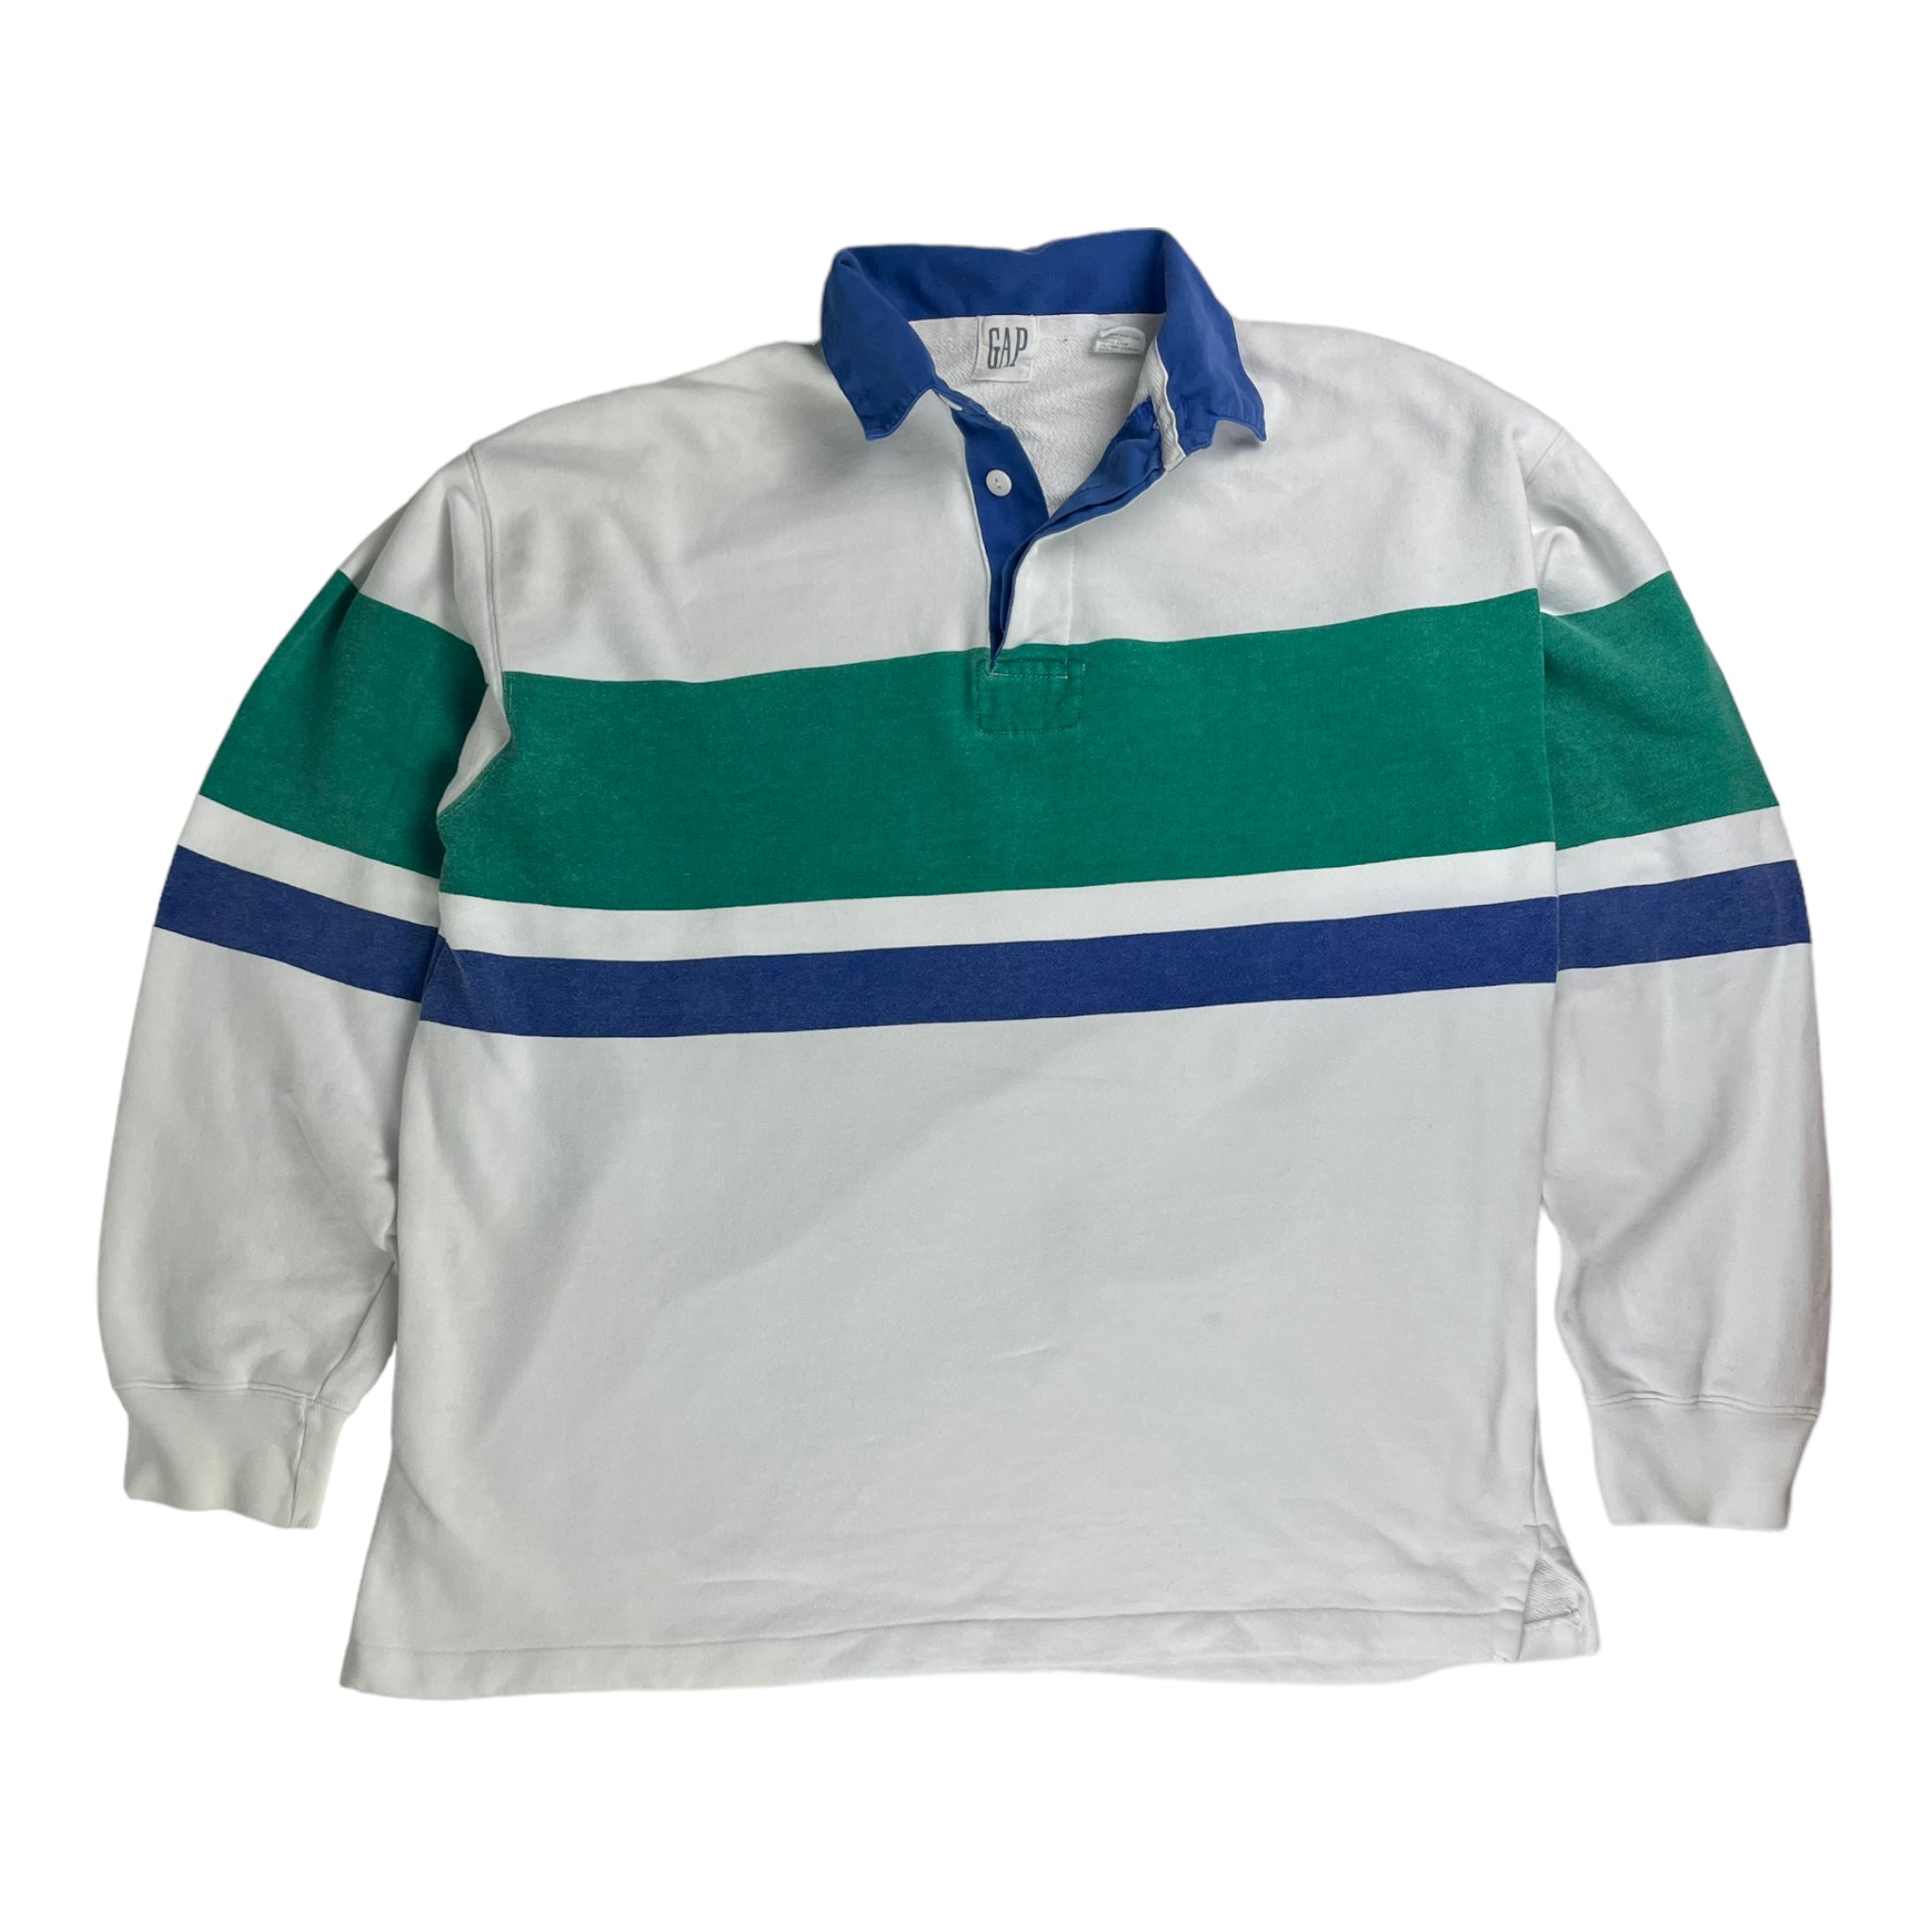 Vintage Gap Rugby Sweatshirt